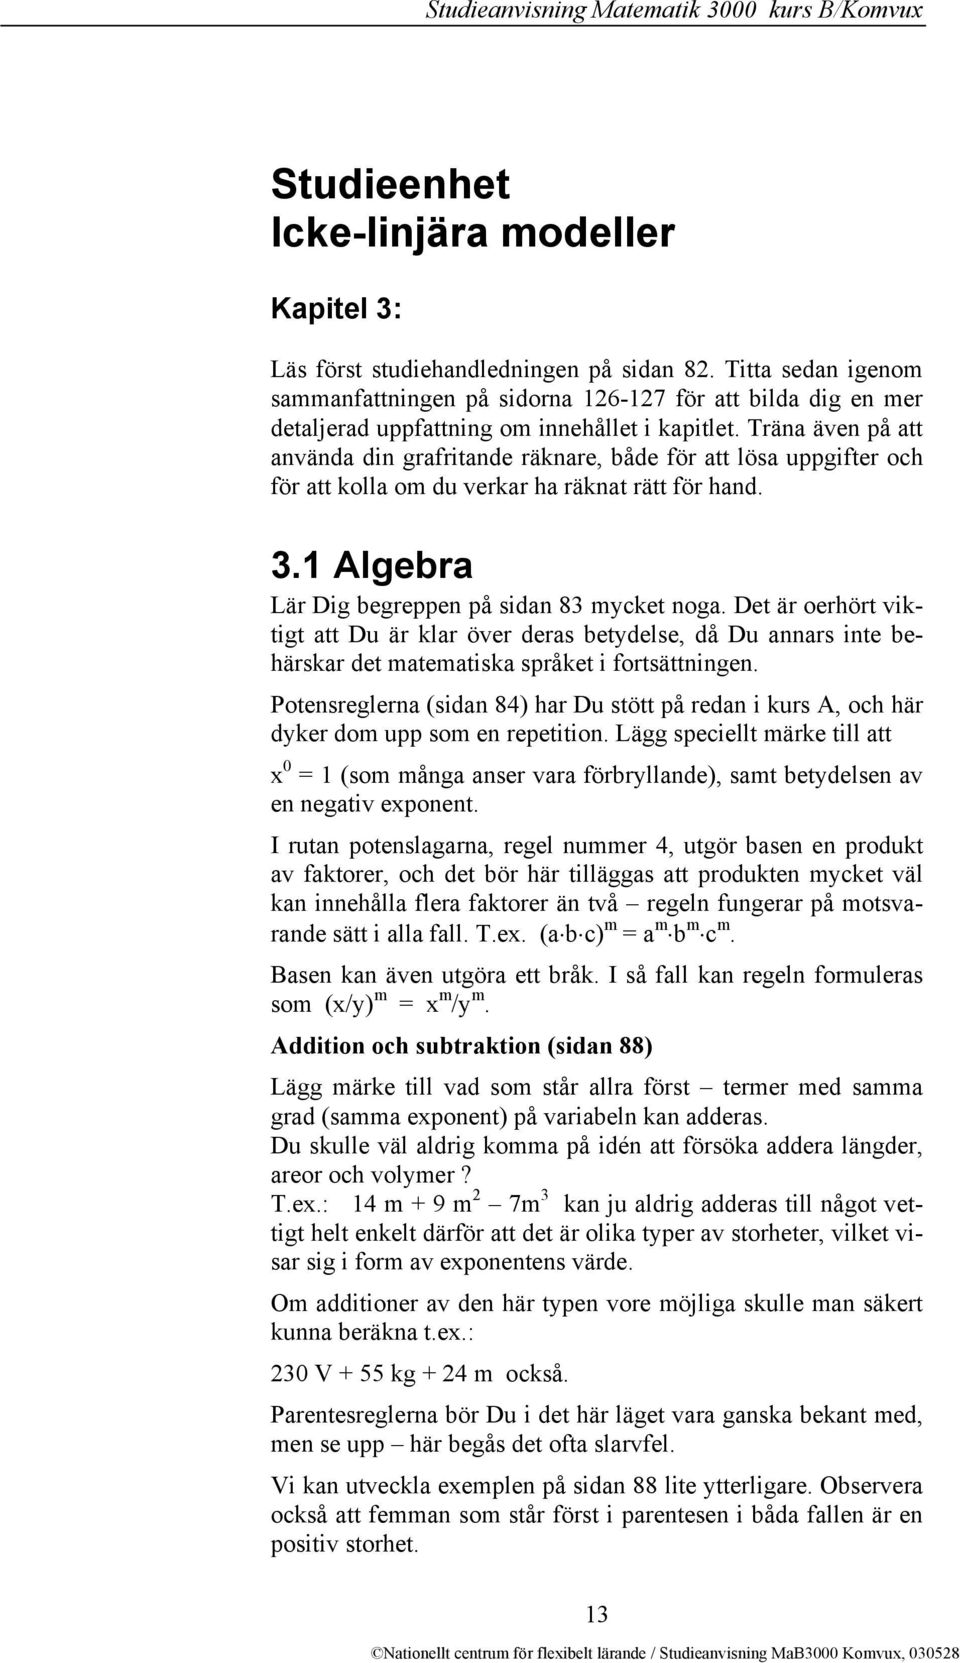 Träna även på att använda din grafritande räknare, både för att lösa uppgifter och för att kolla om du verkar ha räknat rätt för hand. 3.1 Algebra Lär Dig begreppen på sidan 83 mycket noga.